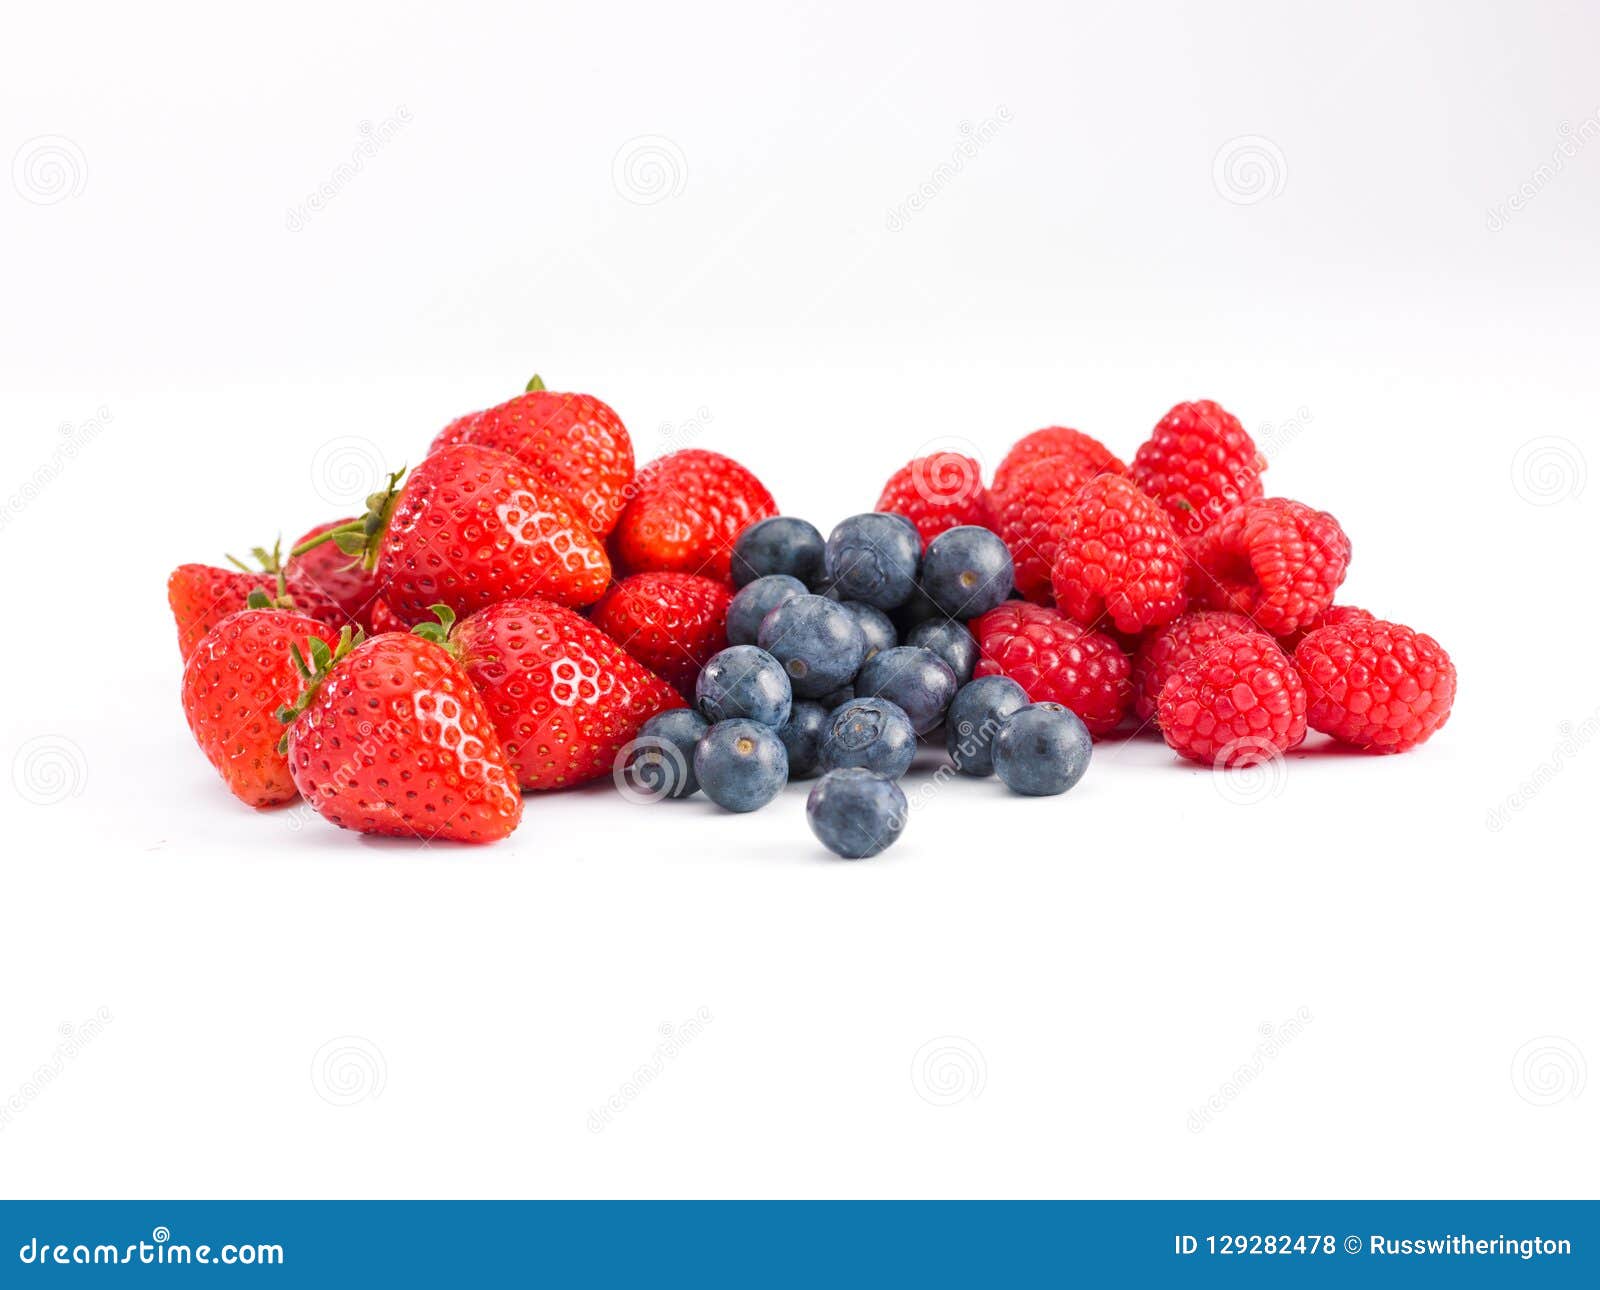 莓果怎麼吃，才不會攝取到過多糖分？ - 灃食公益飲食文化教育基金會